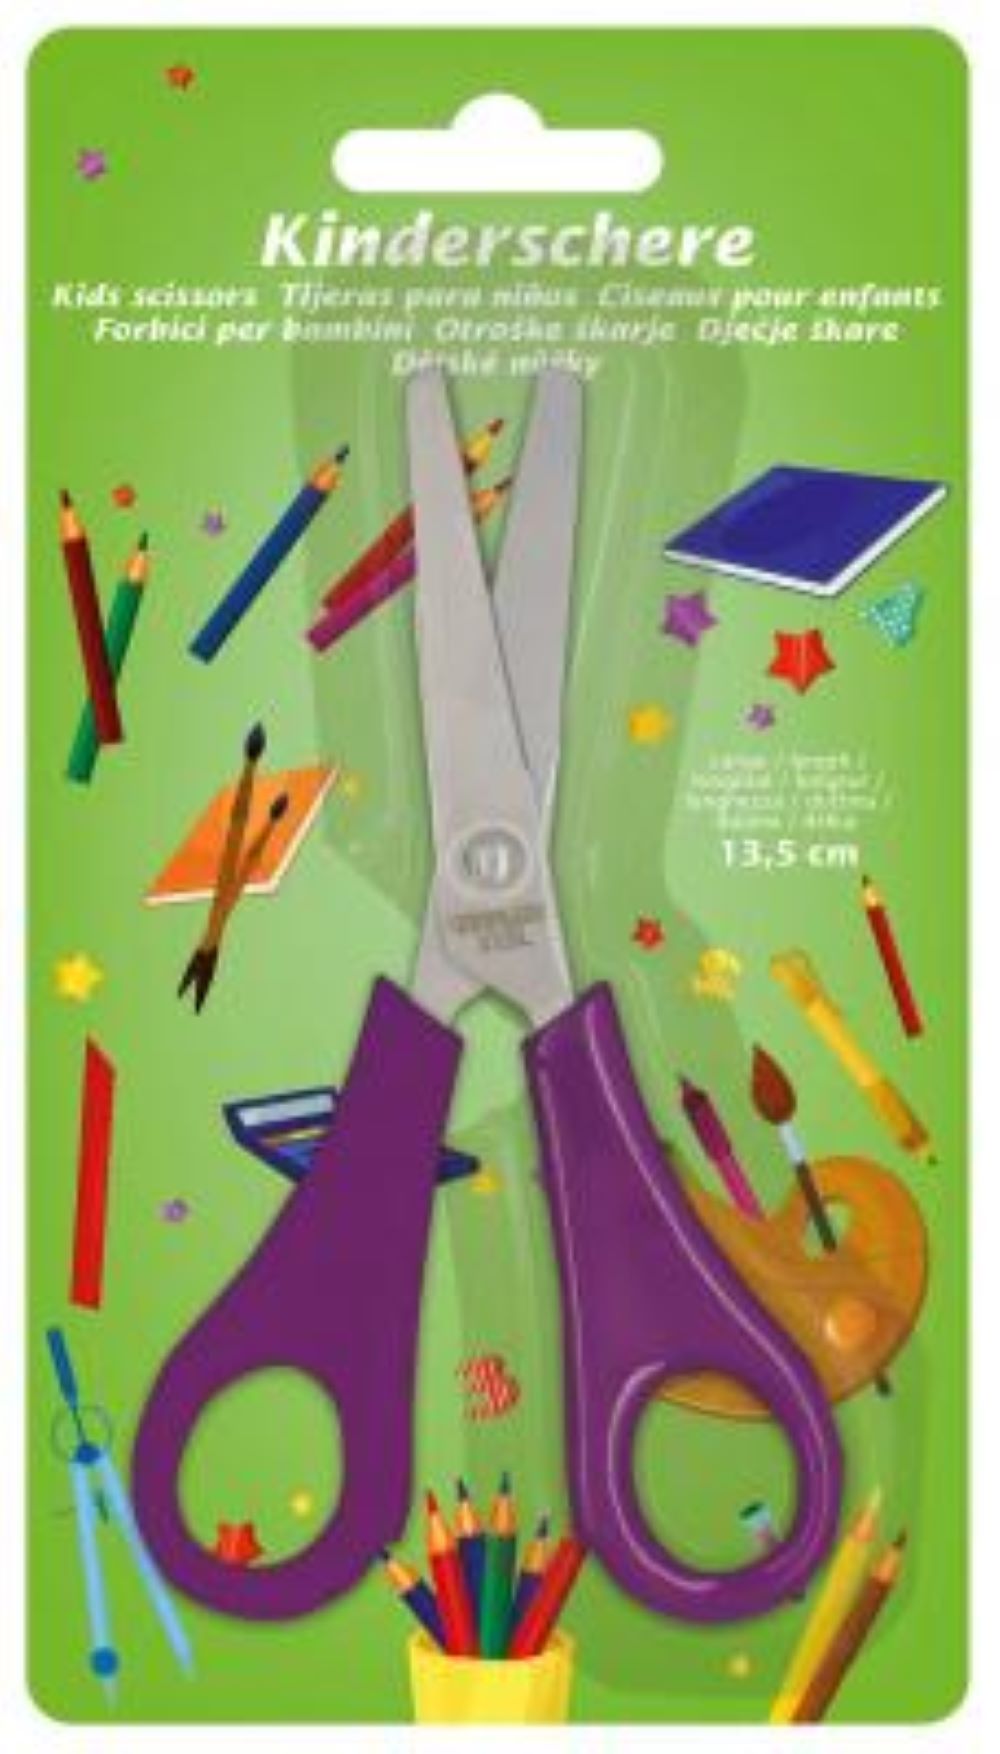 Kinderschere Childrens Scissors